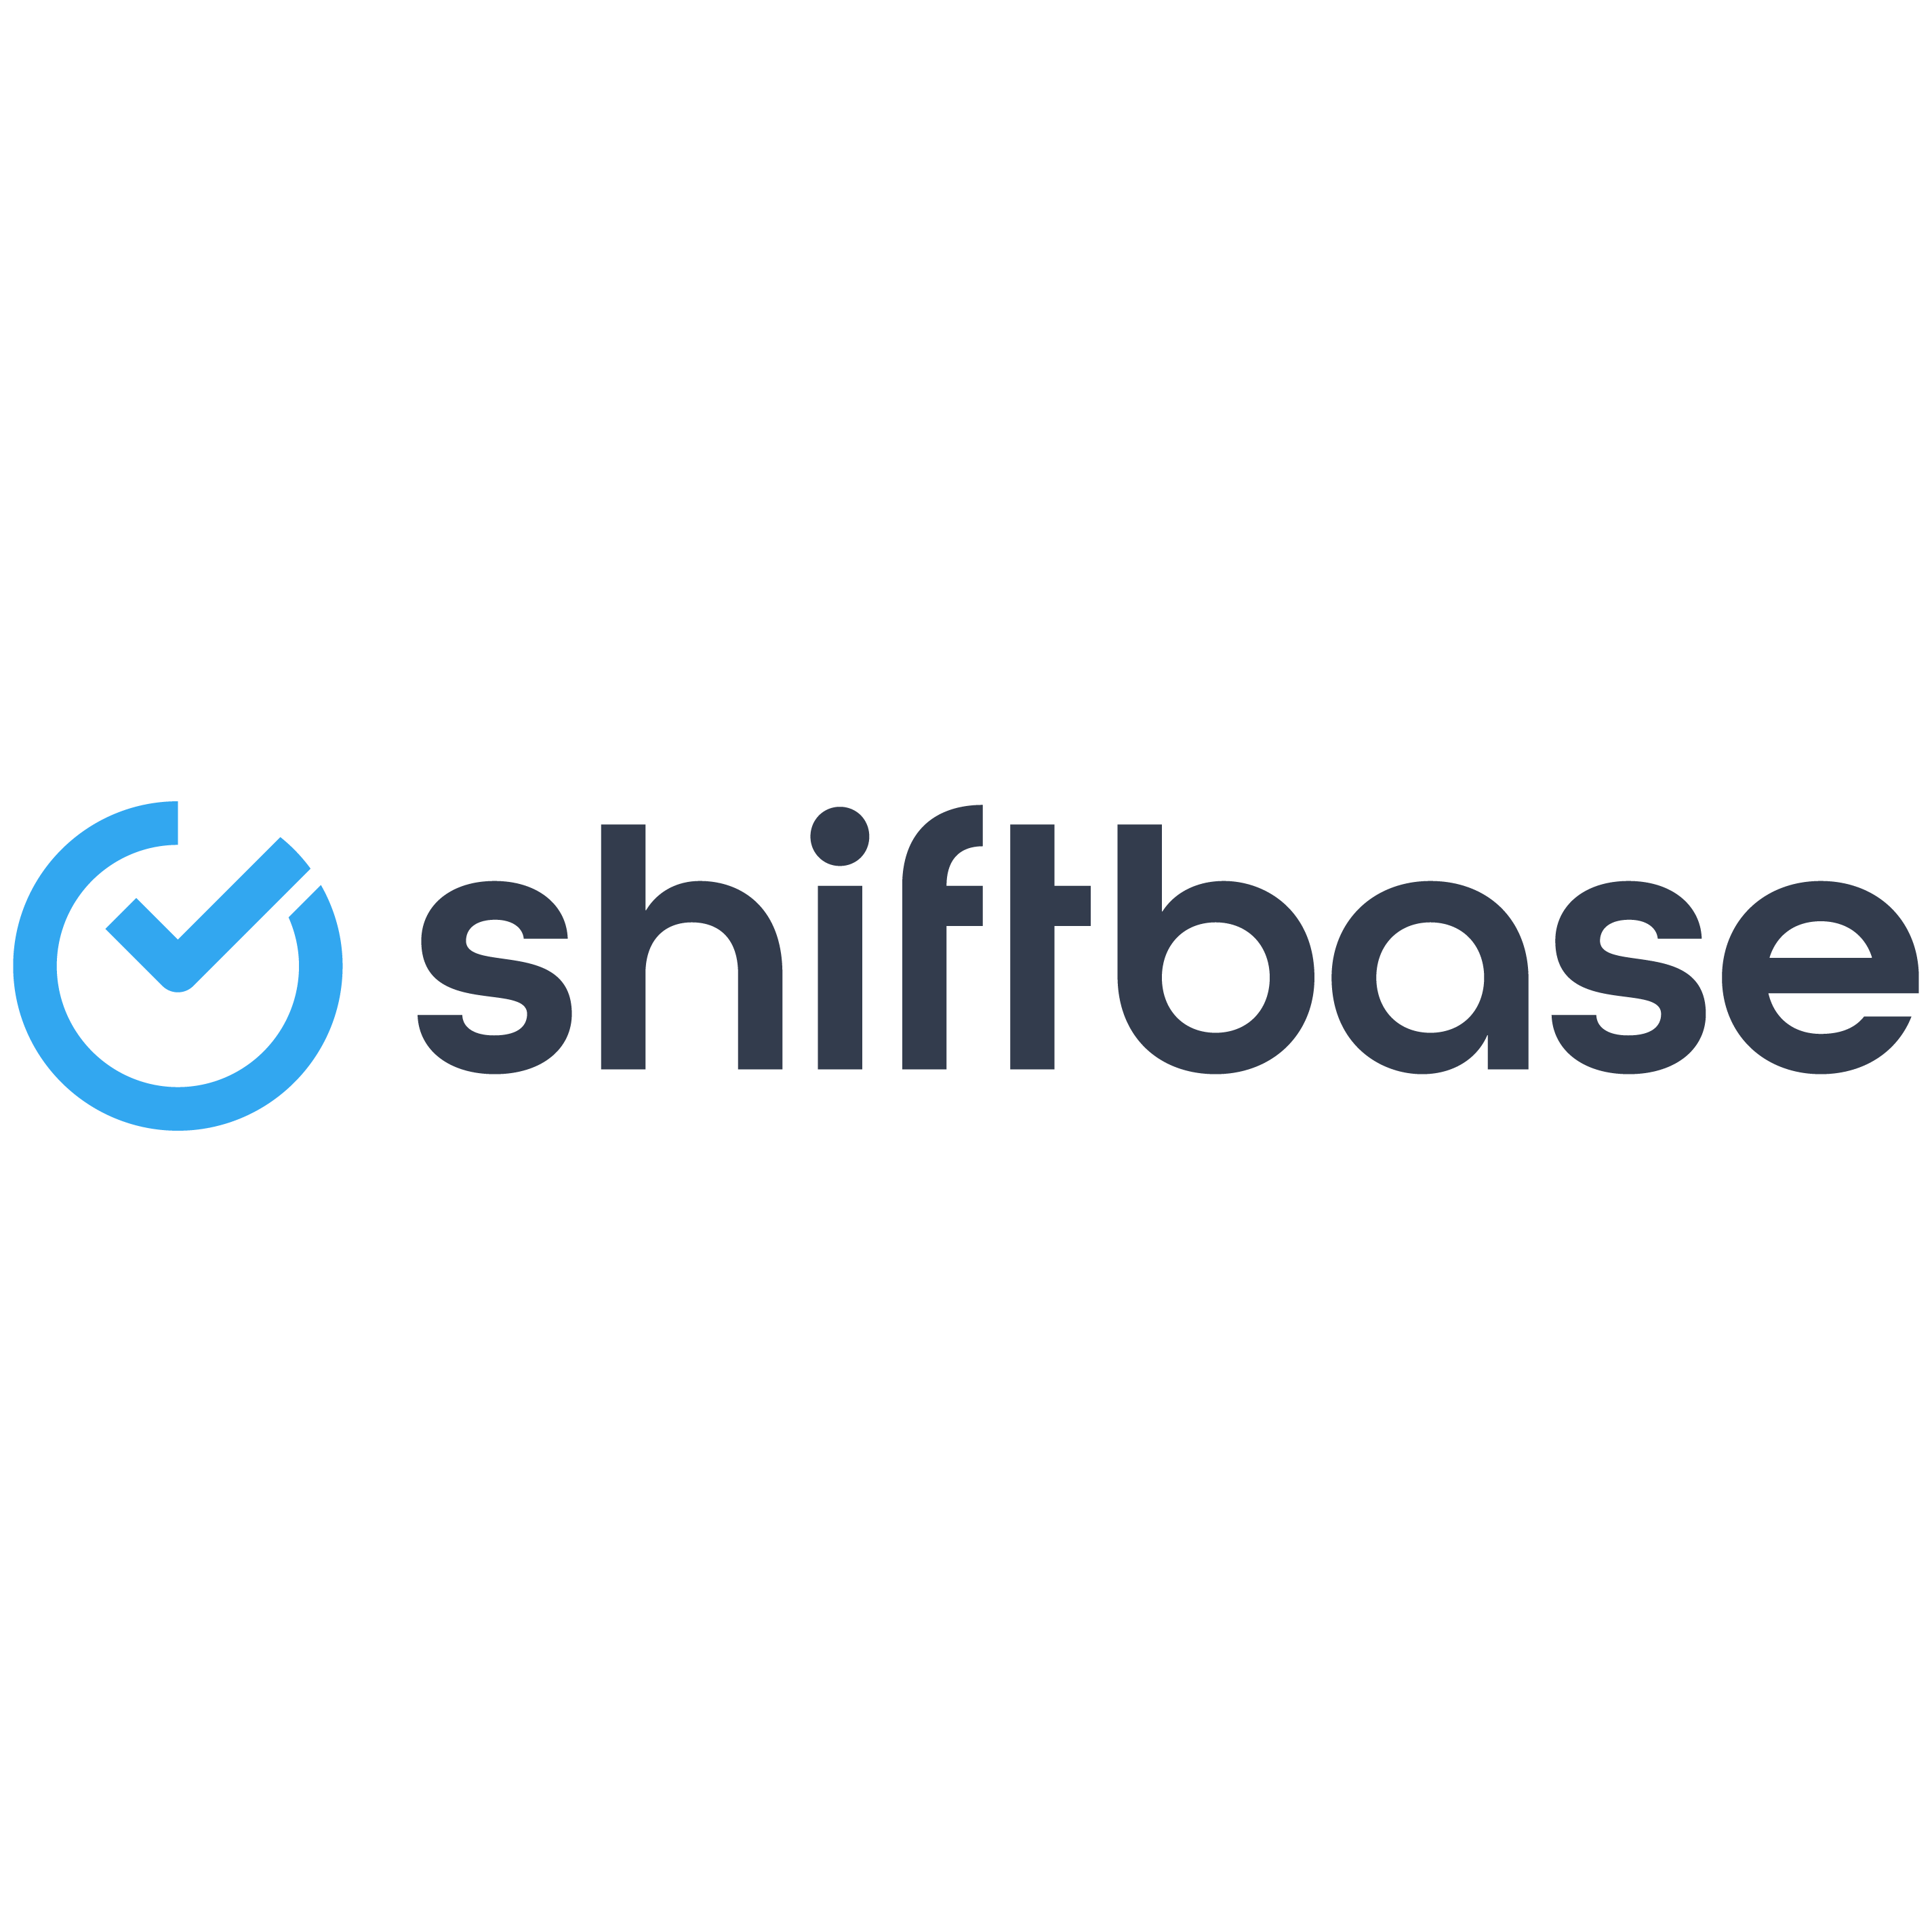 Shiftbase logo